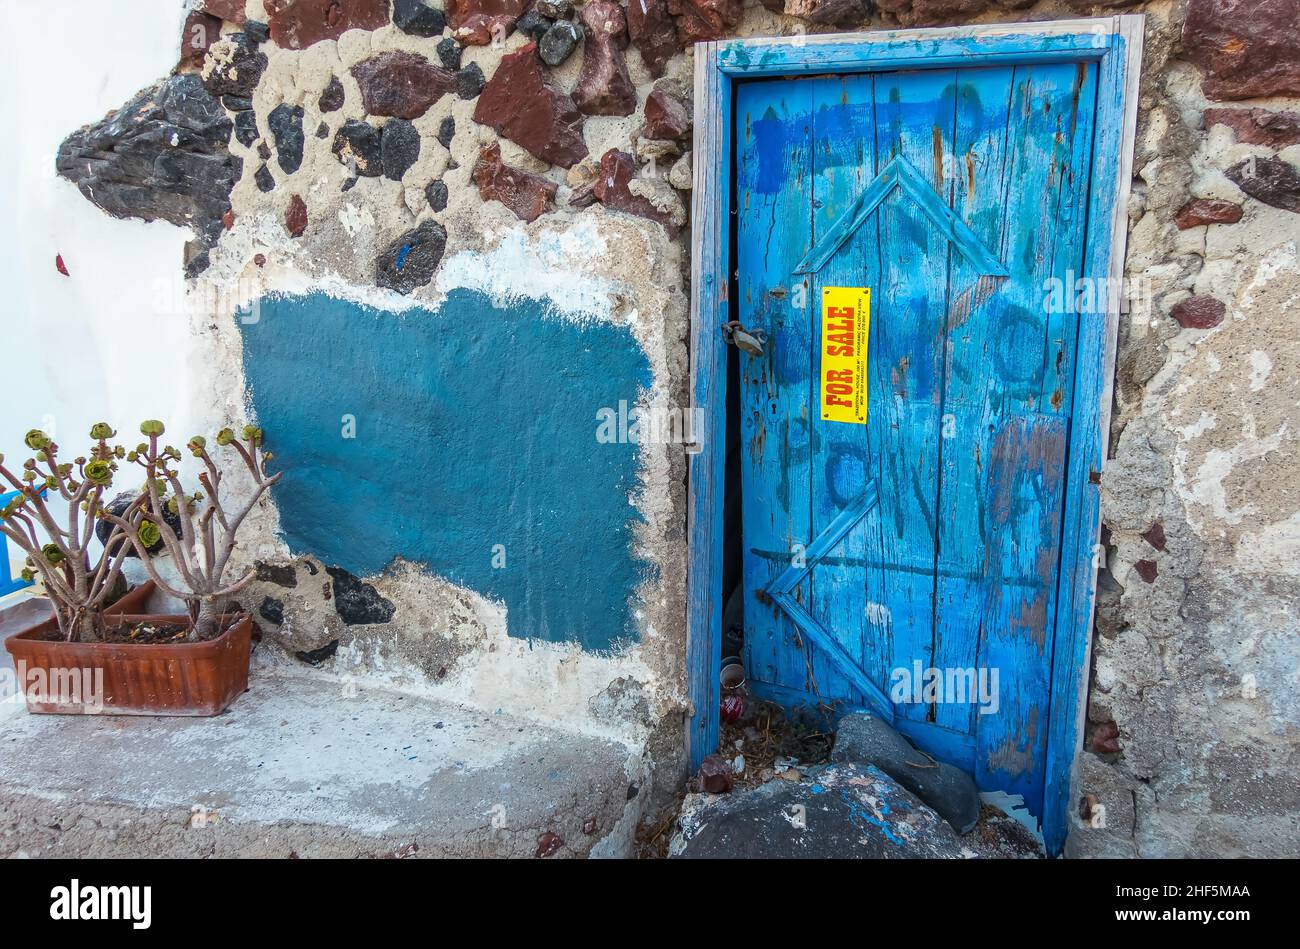 Marode Immobilie mit typische blauer Holztür wird auf einer griechischen Insel zum Verkauf angeboten Foto Stock